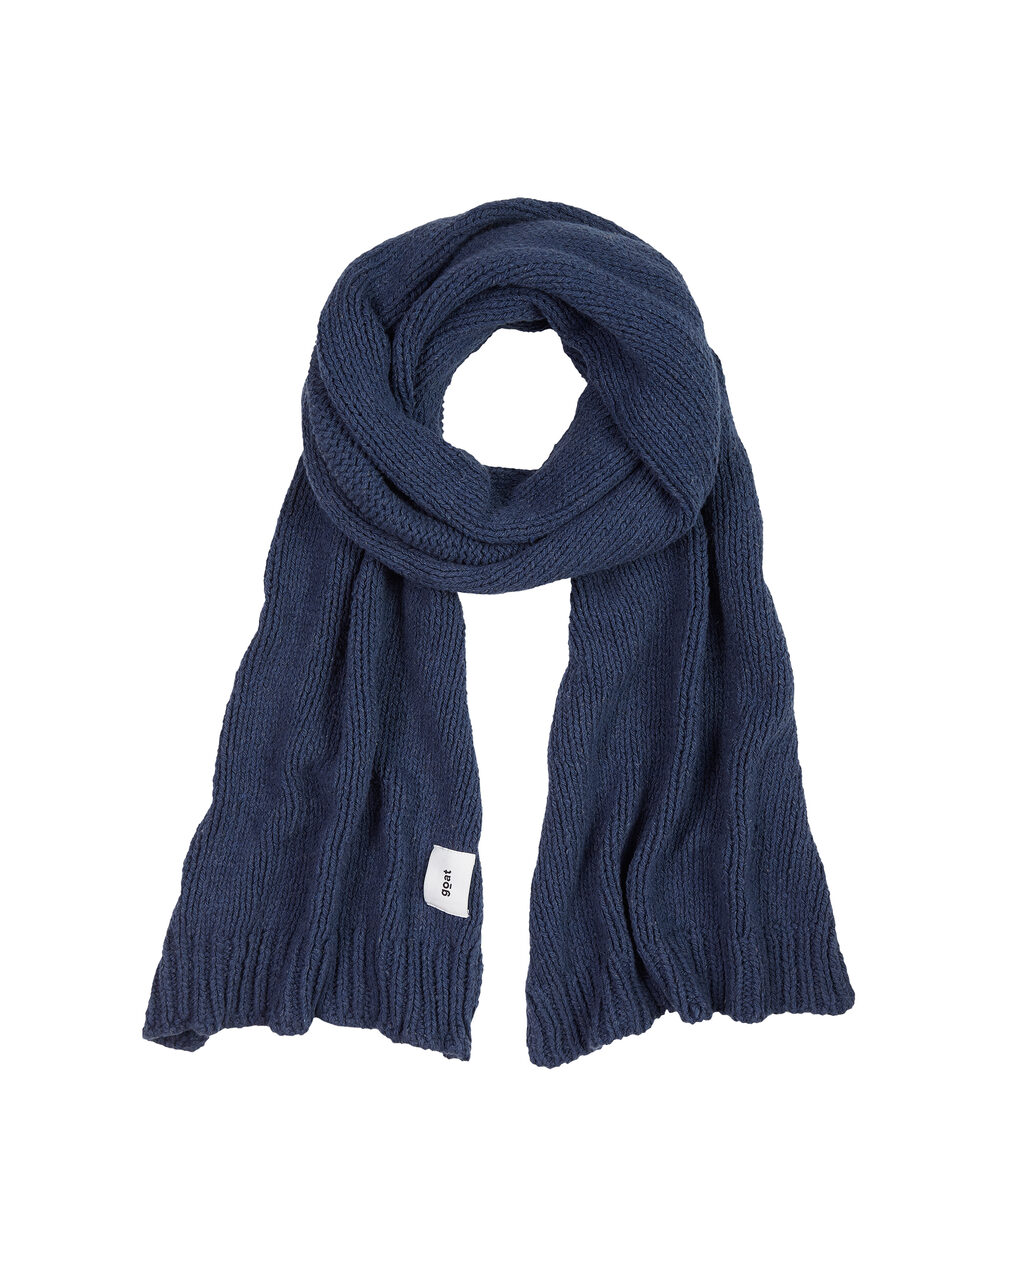 finn-recycled-denim-scarf-dark-blue-2-goat-organic-apparel